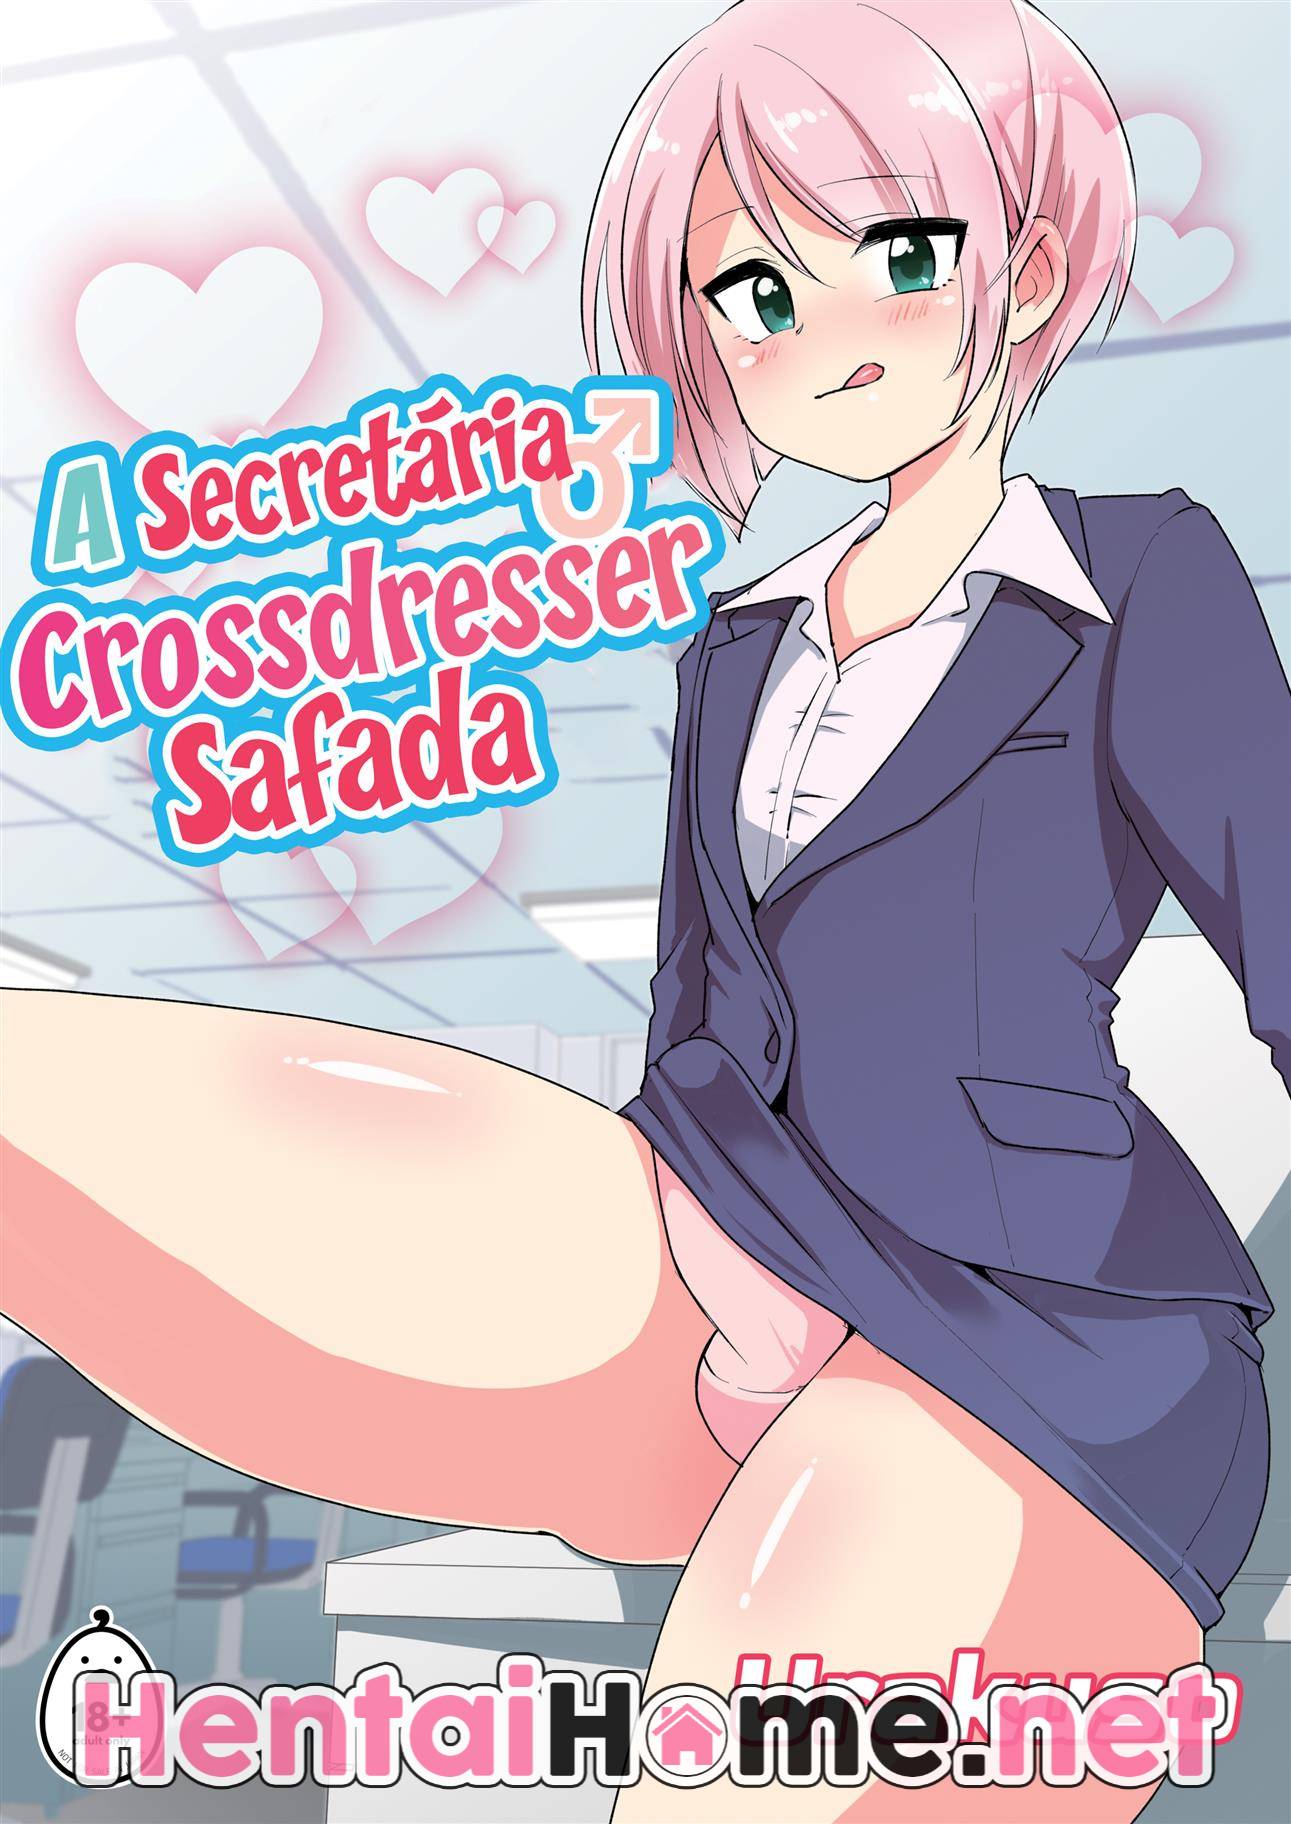 A Secretária Crossdresser Safada